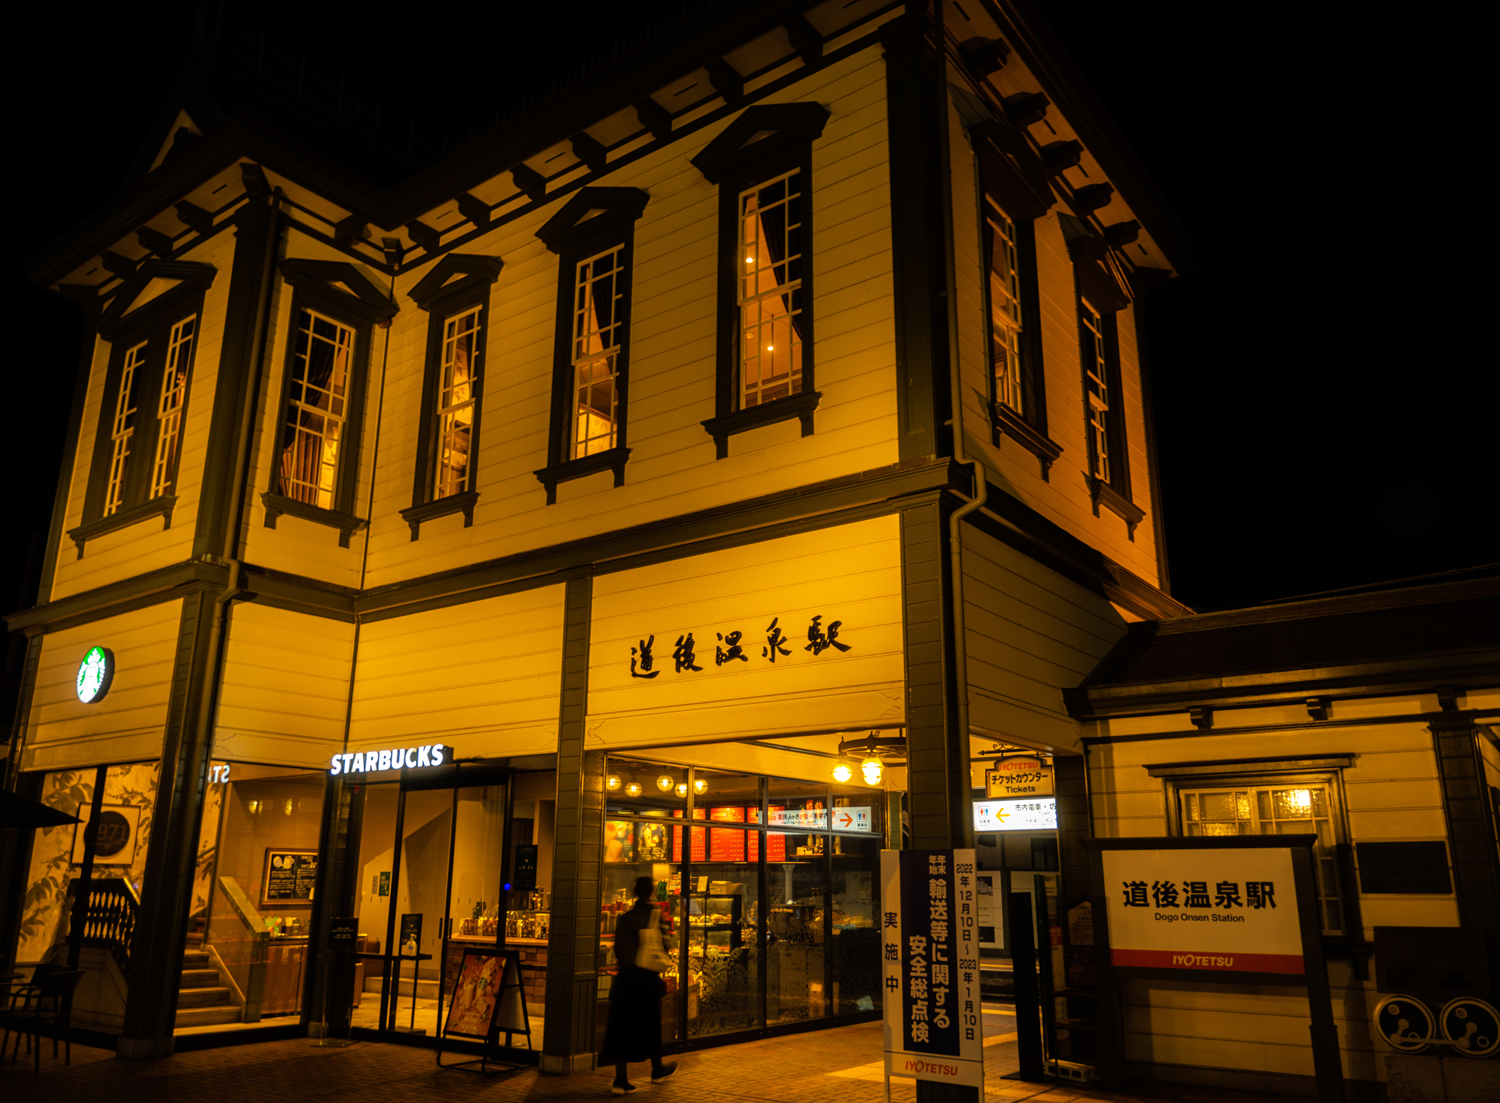 夜の道後温泉駅 / Dogo Onsen Station at night